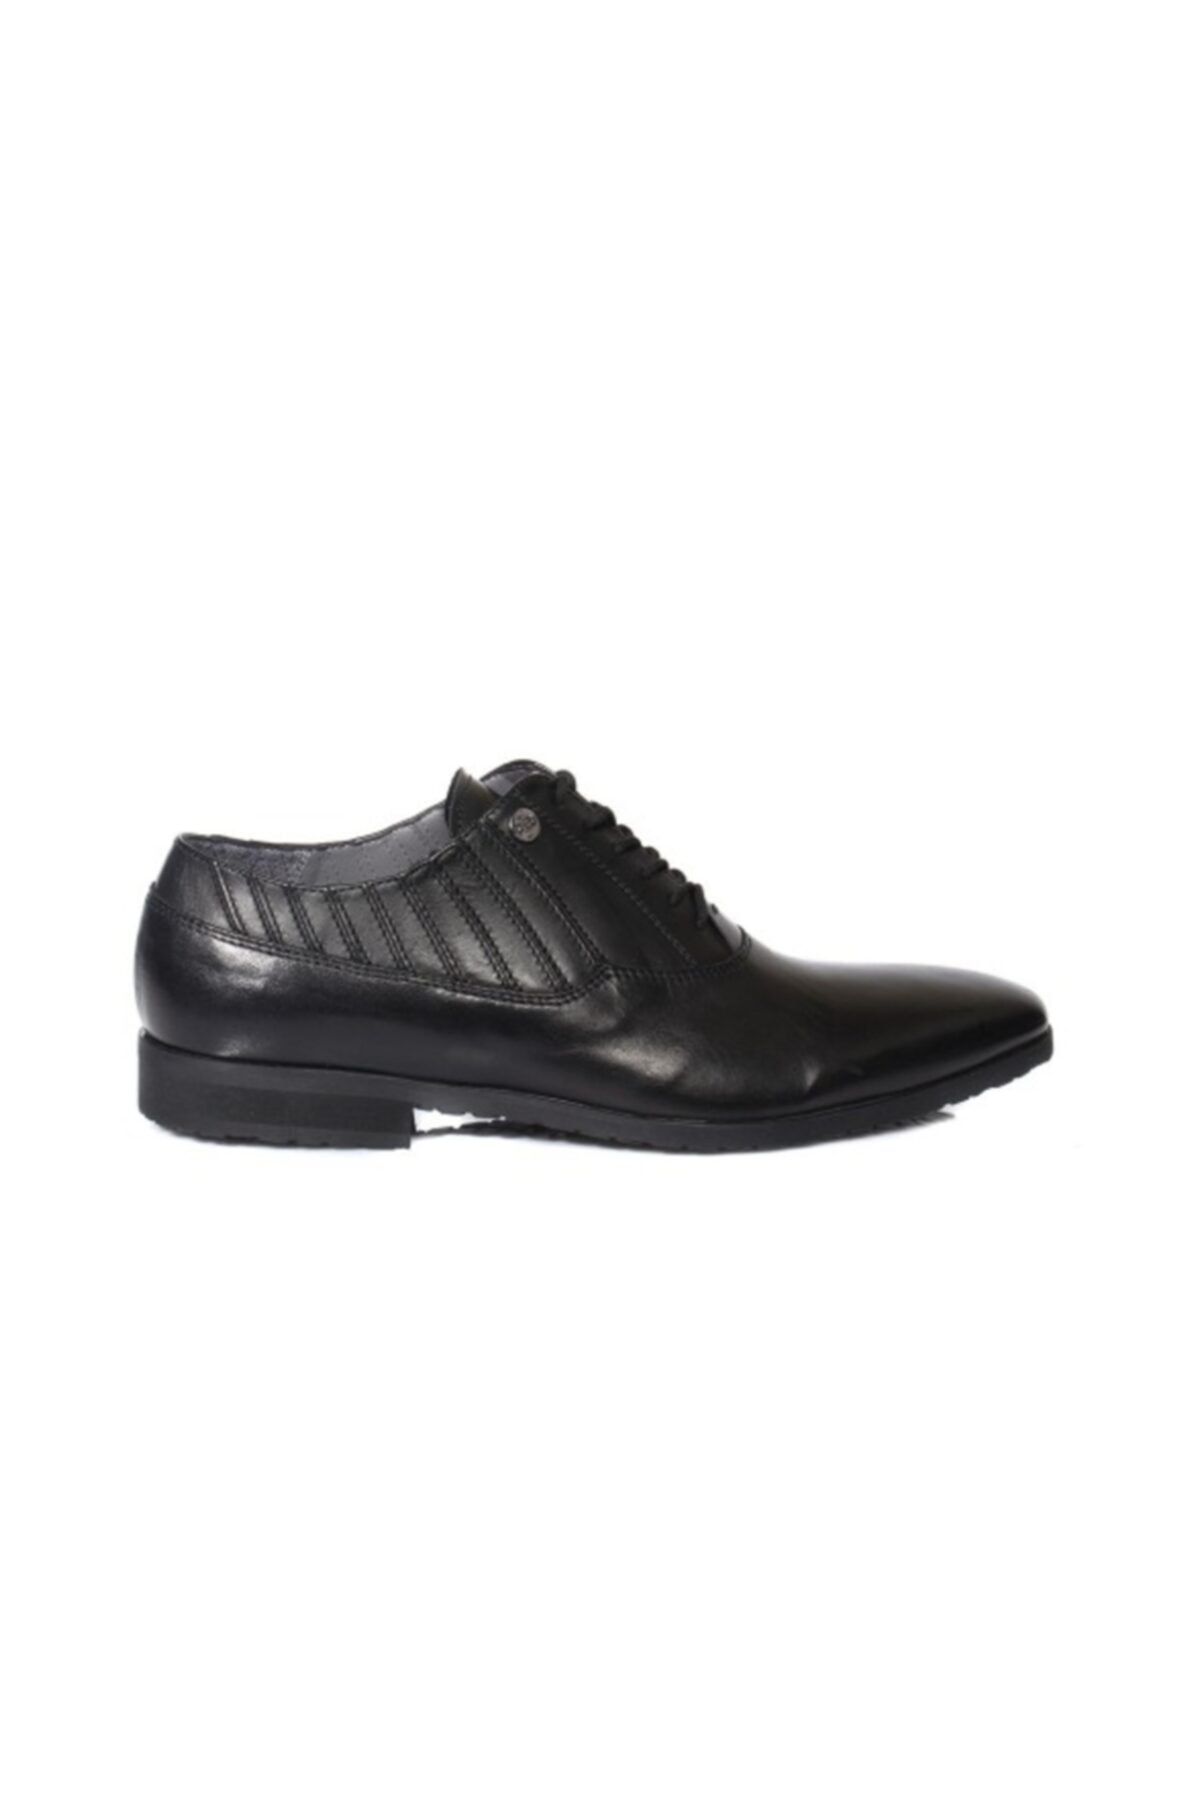 Cesare Paciotti Erkek Klasik Ayakkabı Siyah Ju7